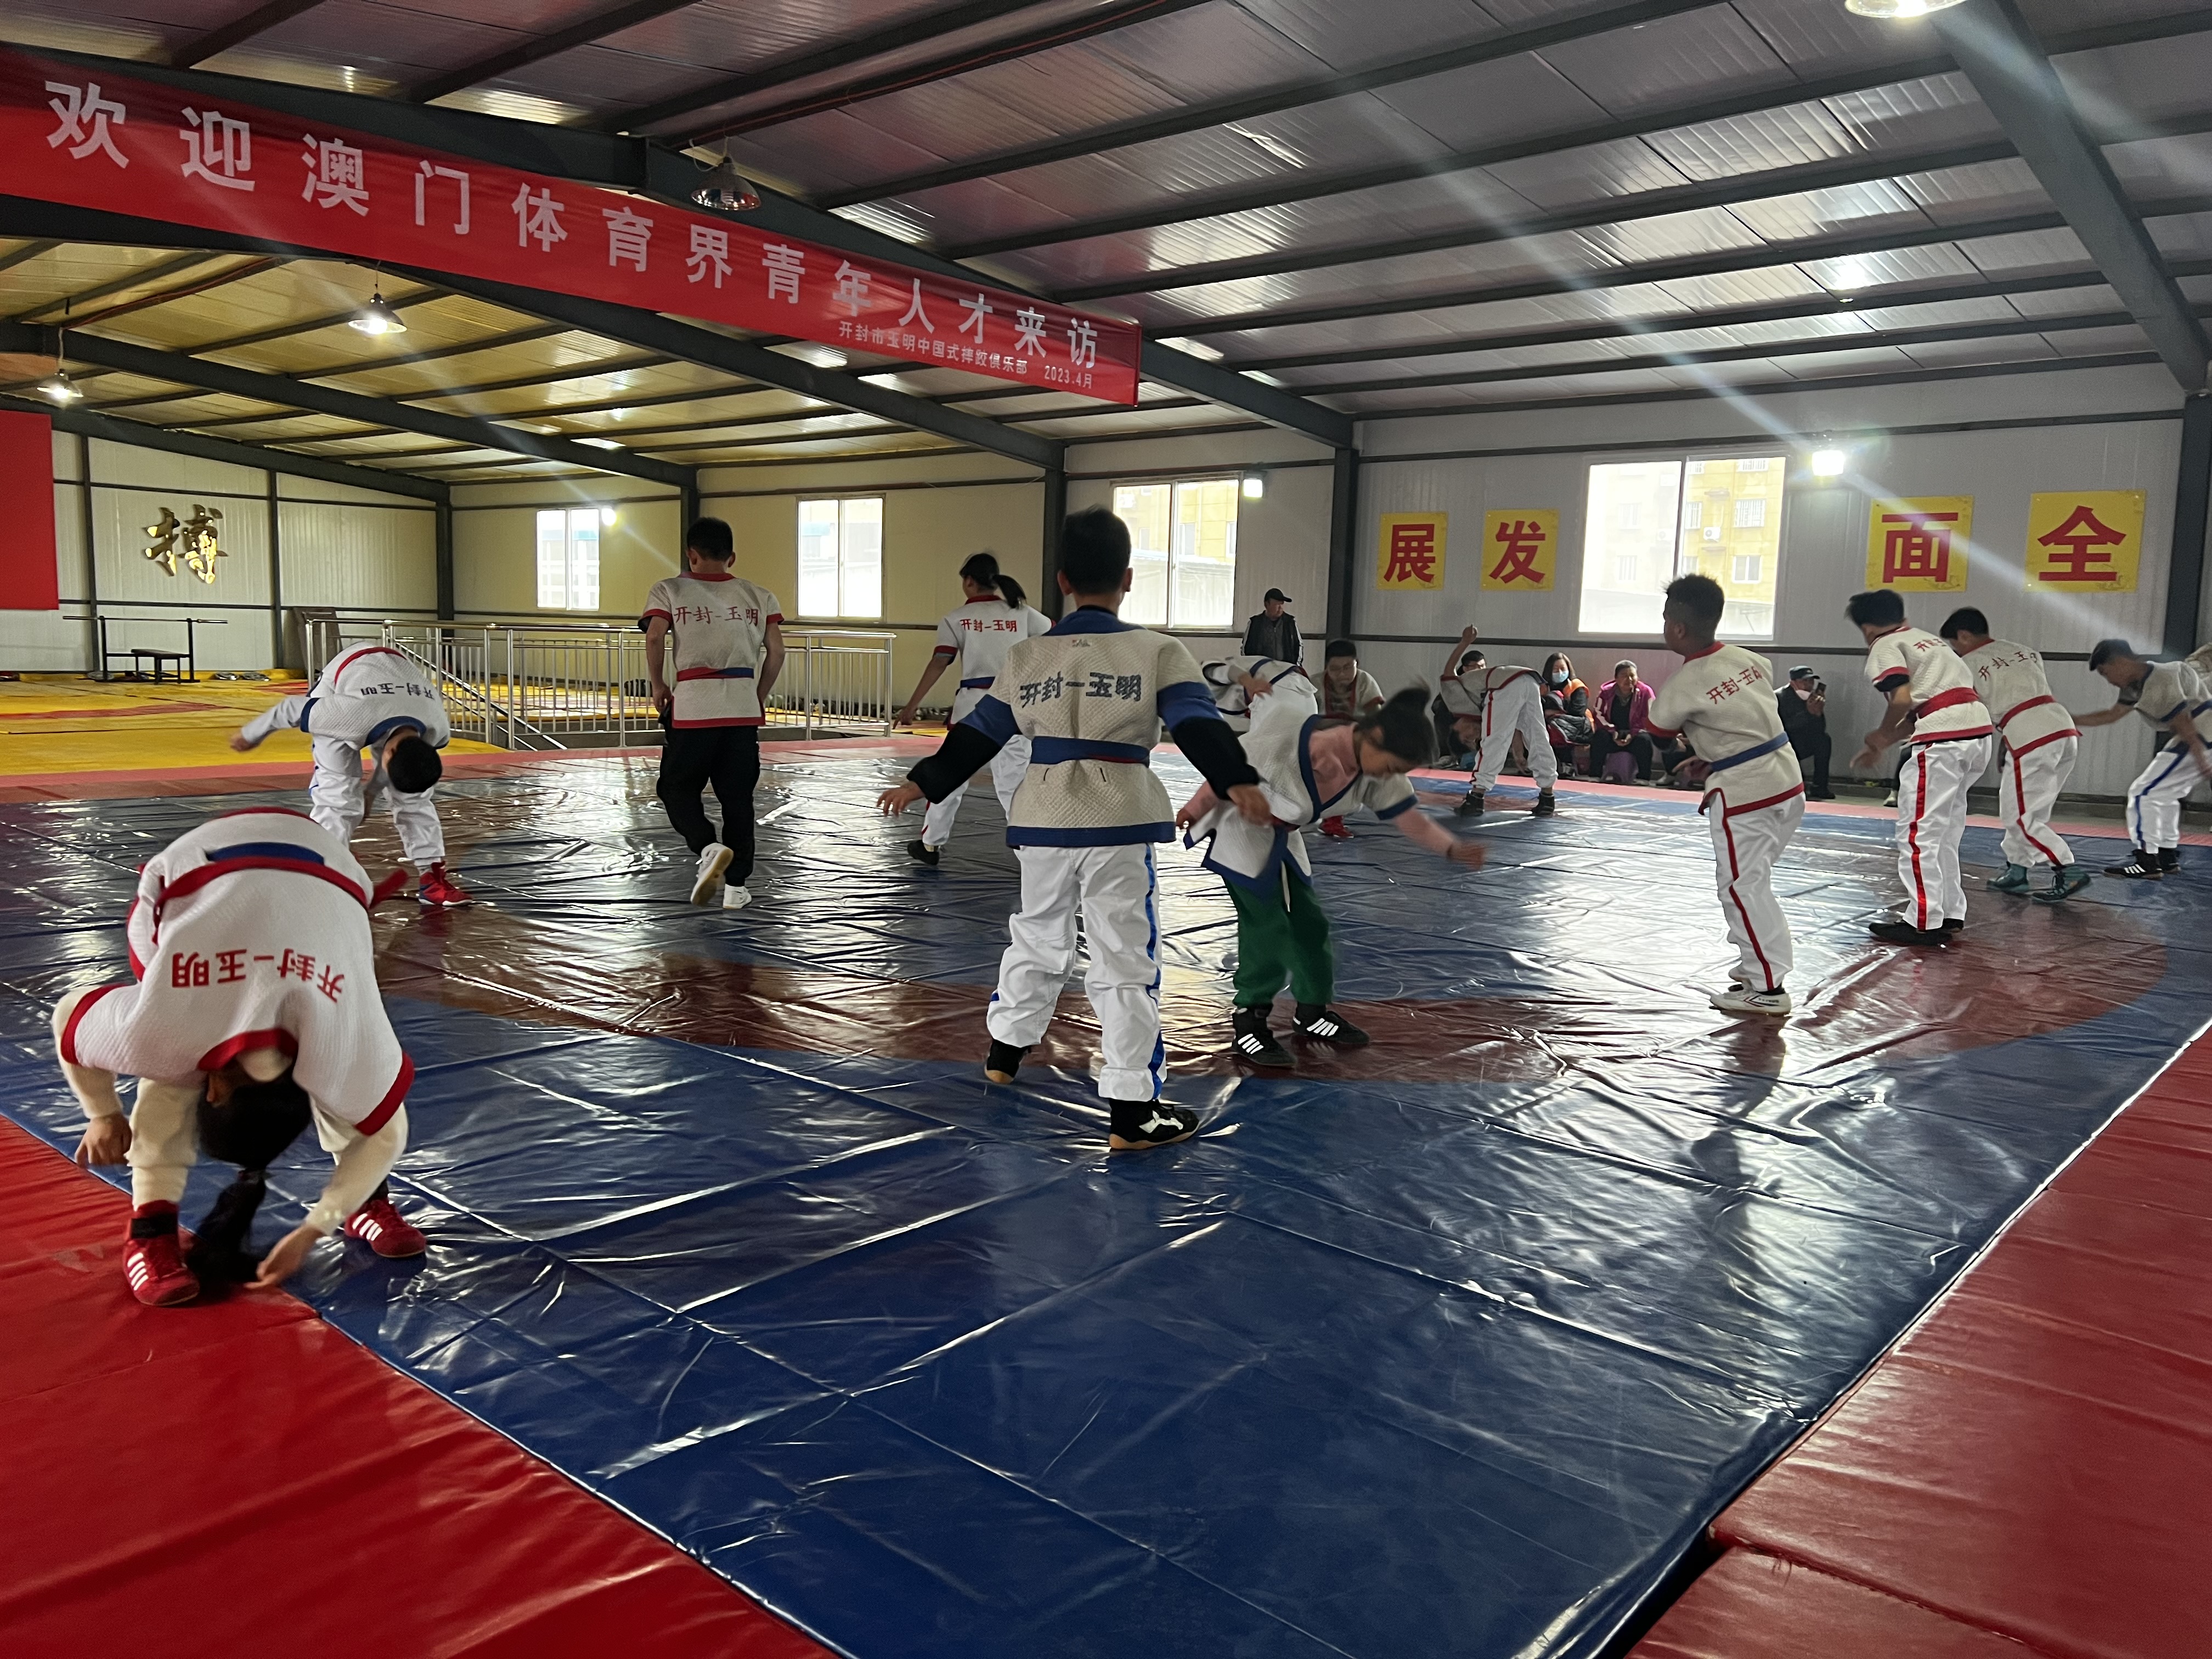 9  開封市玉明中國式摔跤俱樂部為民間開發的一個成功例子.jpg